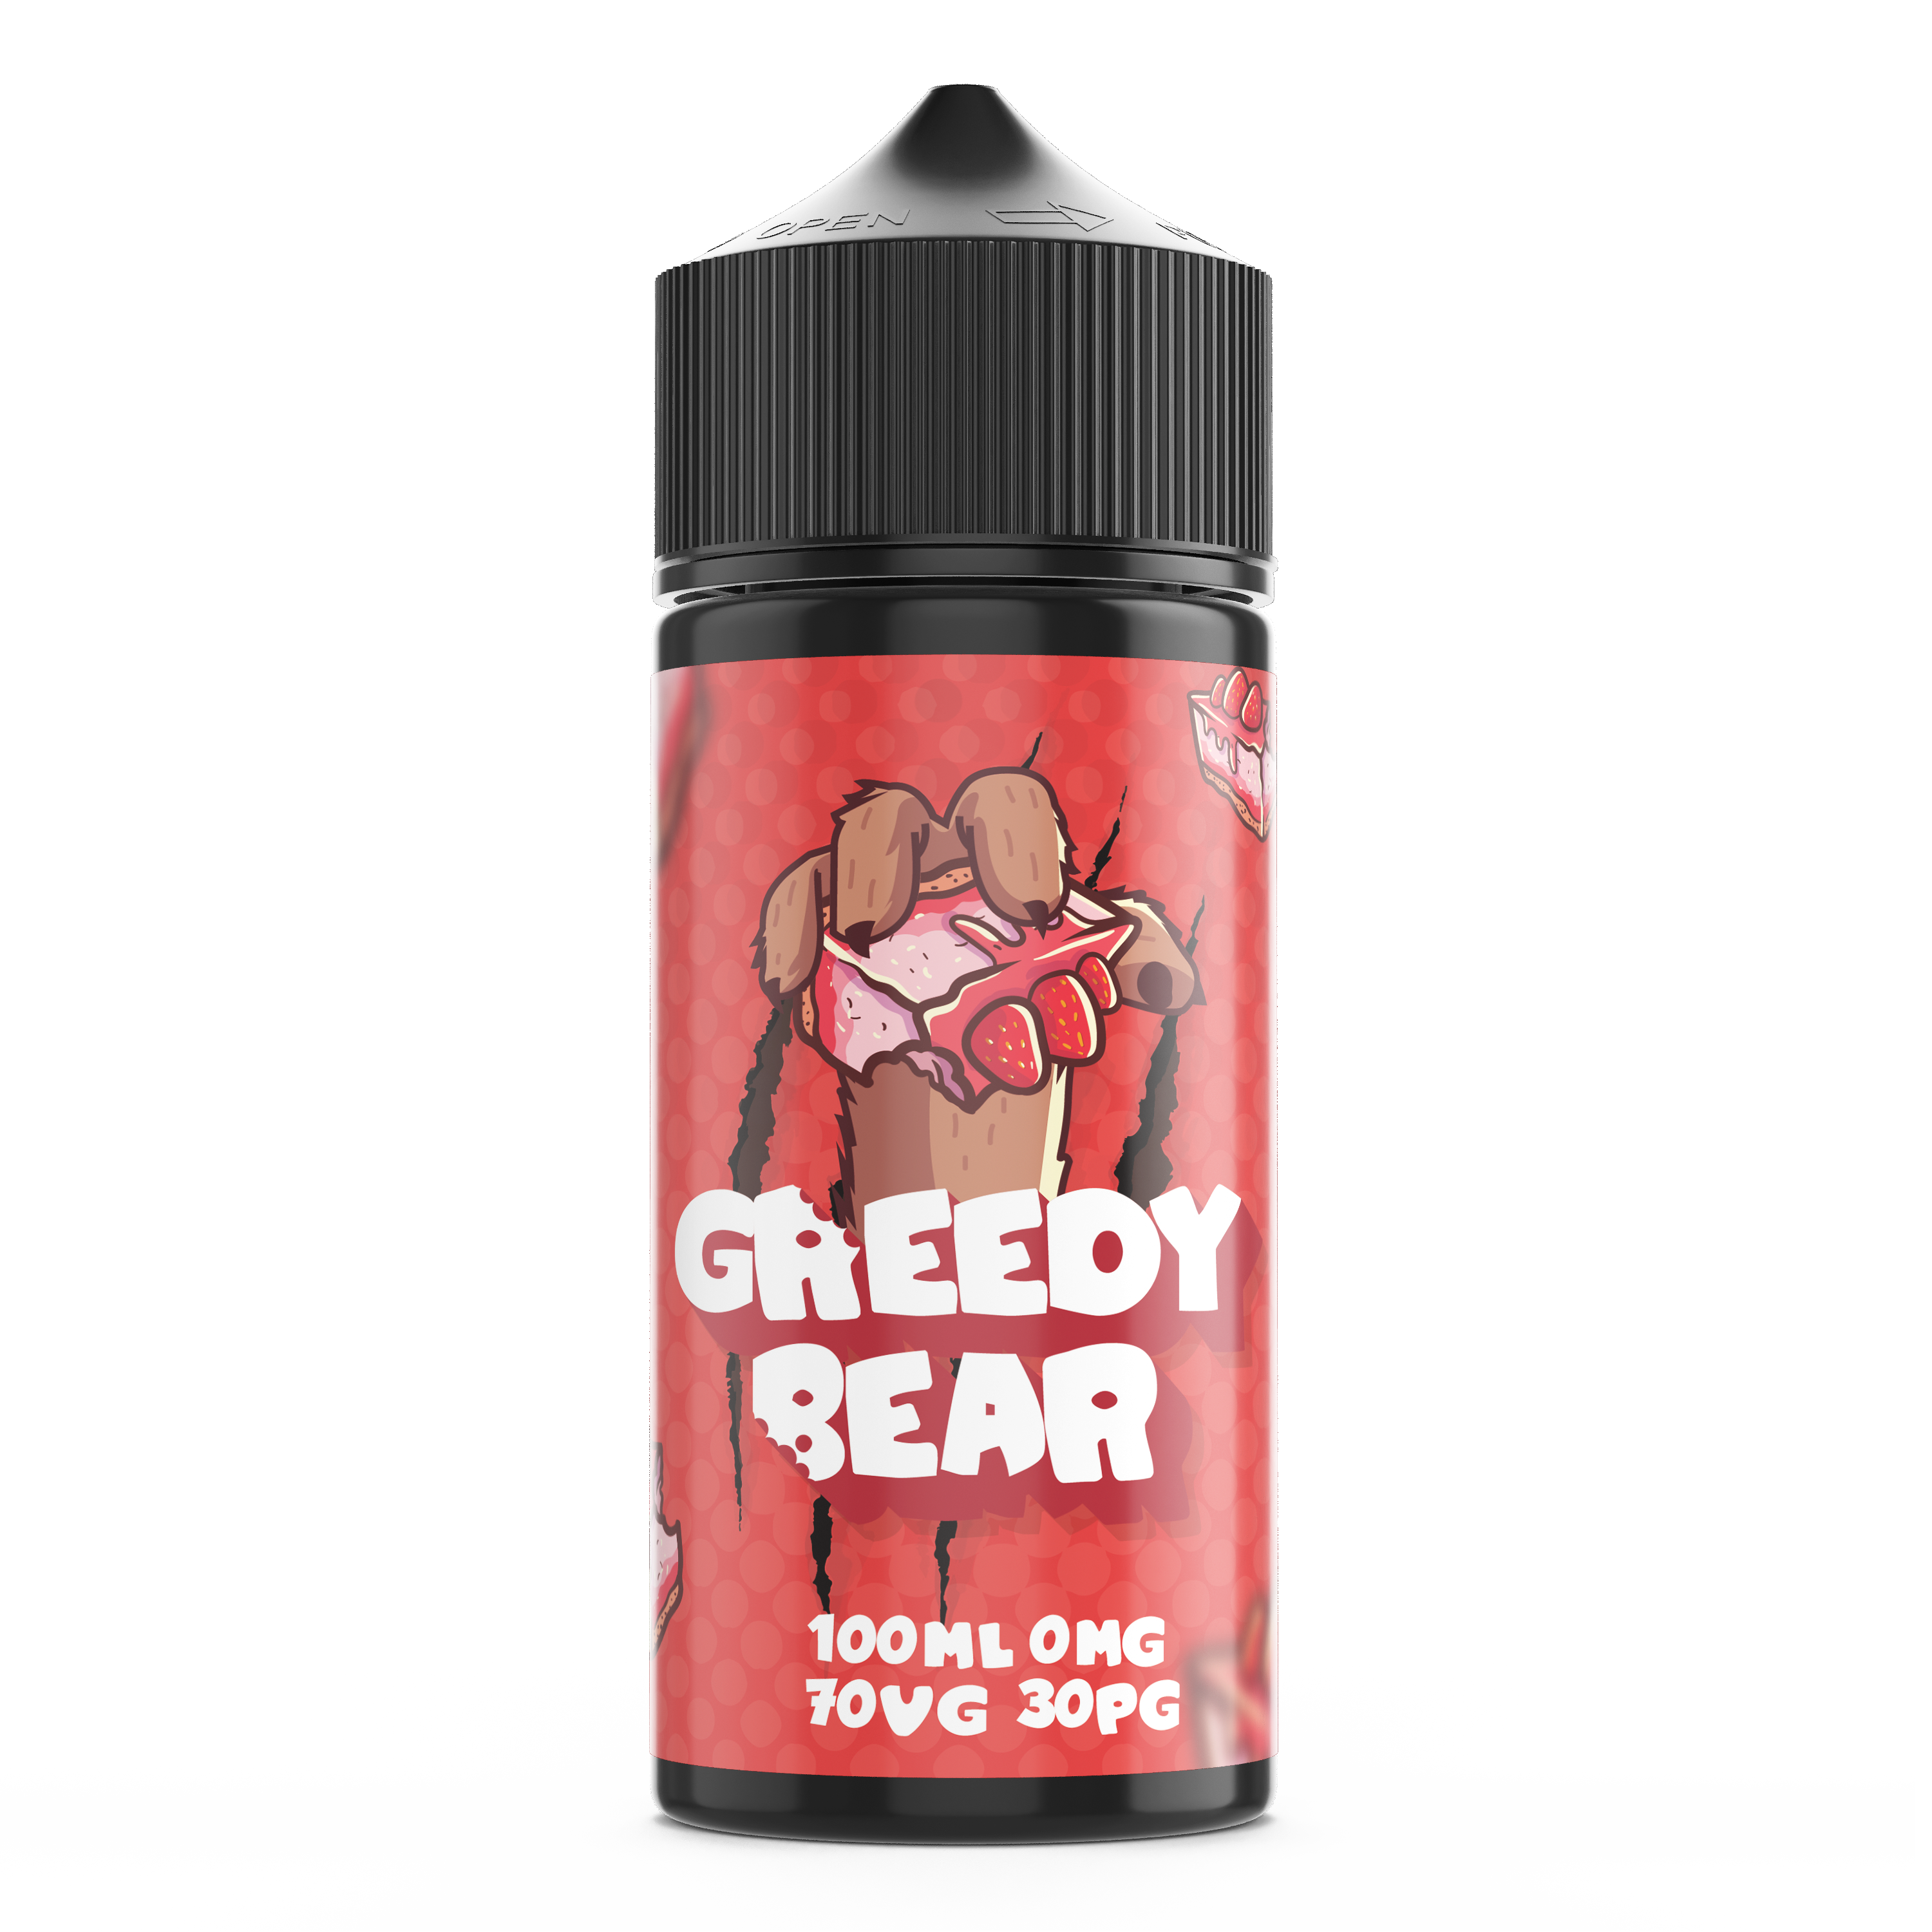 Chubby Cheesecake  E-Liquid by Greedy Bear - Shortfills UK